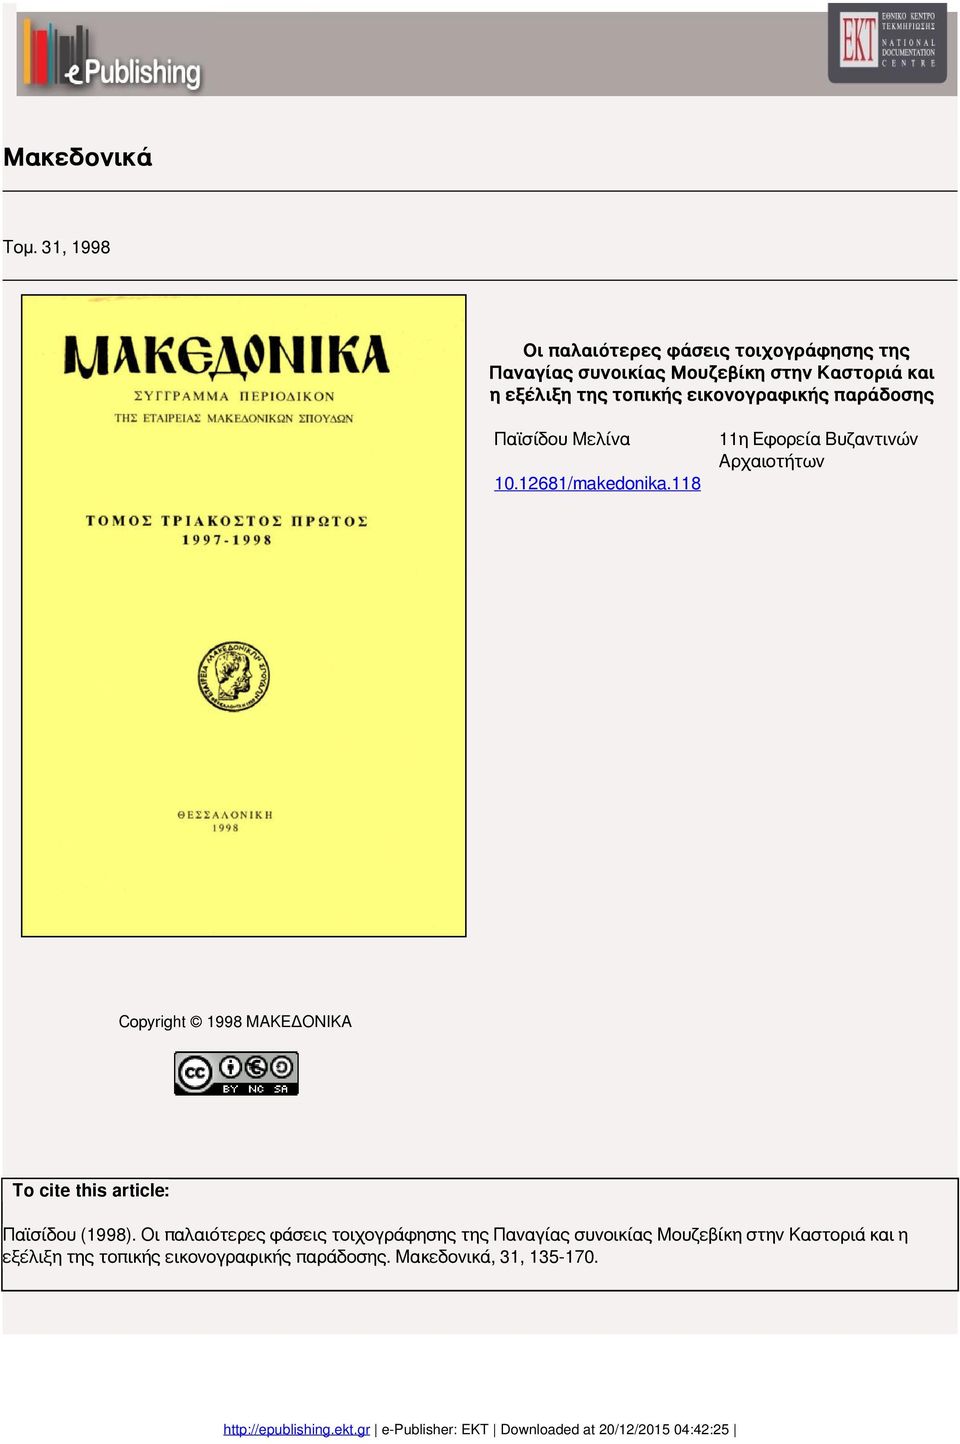 τοπικής εικονογραφικής παράδοσης Παϊσίδου Μελίνα 11η Εφορεία Βυζαντινών Αρχαιοτήτων 10.12681/makedonika.